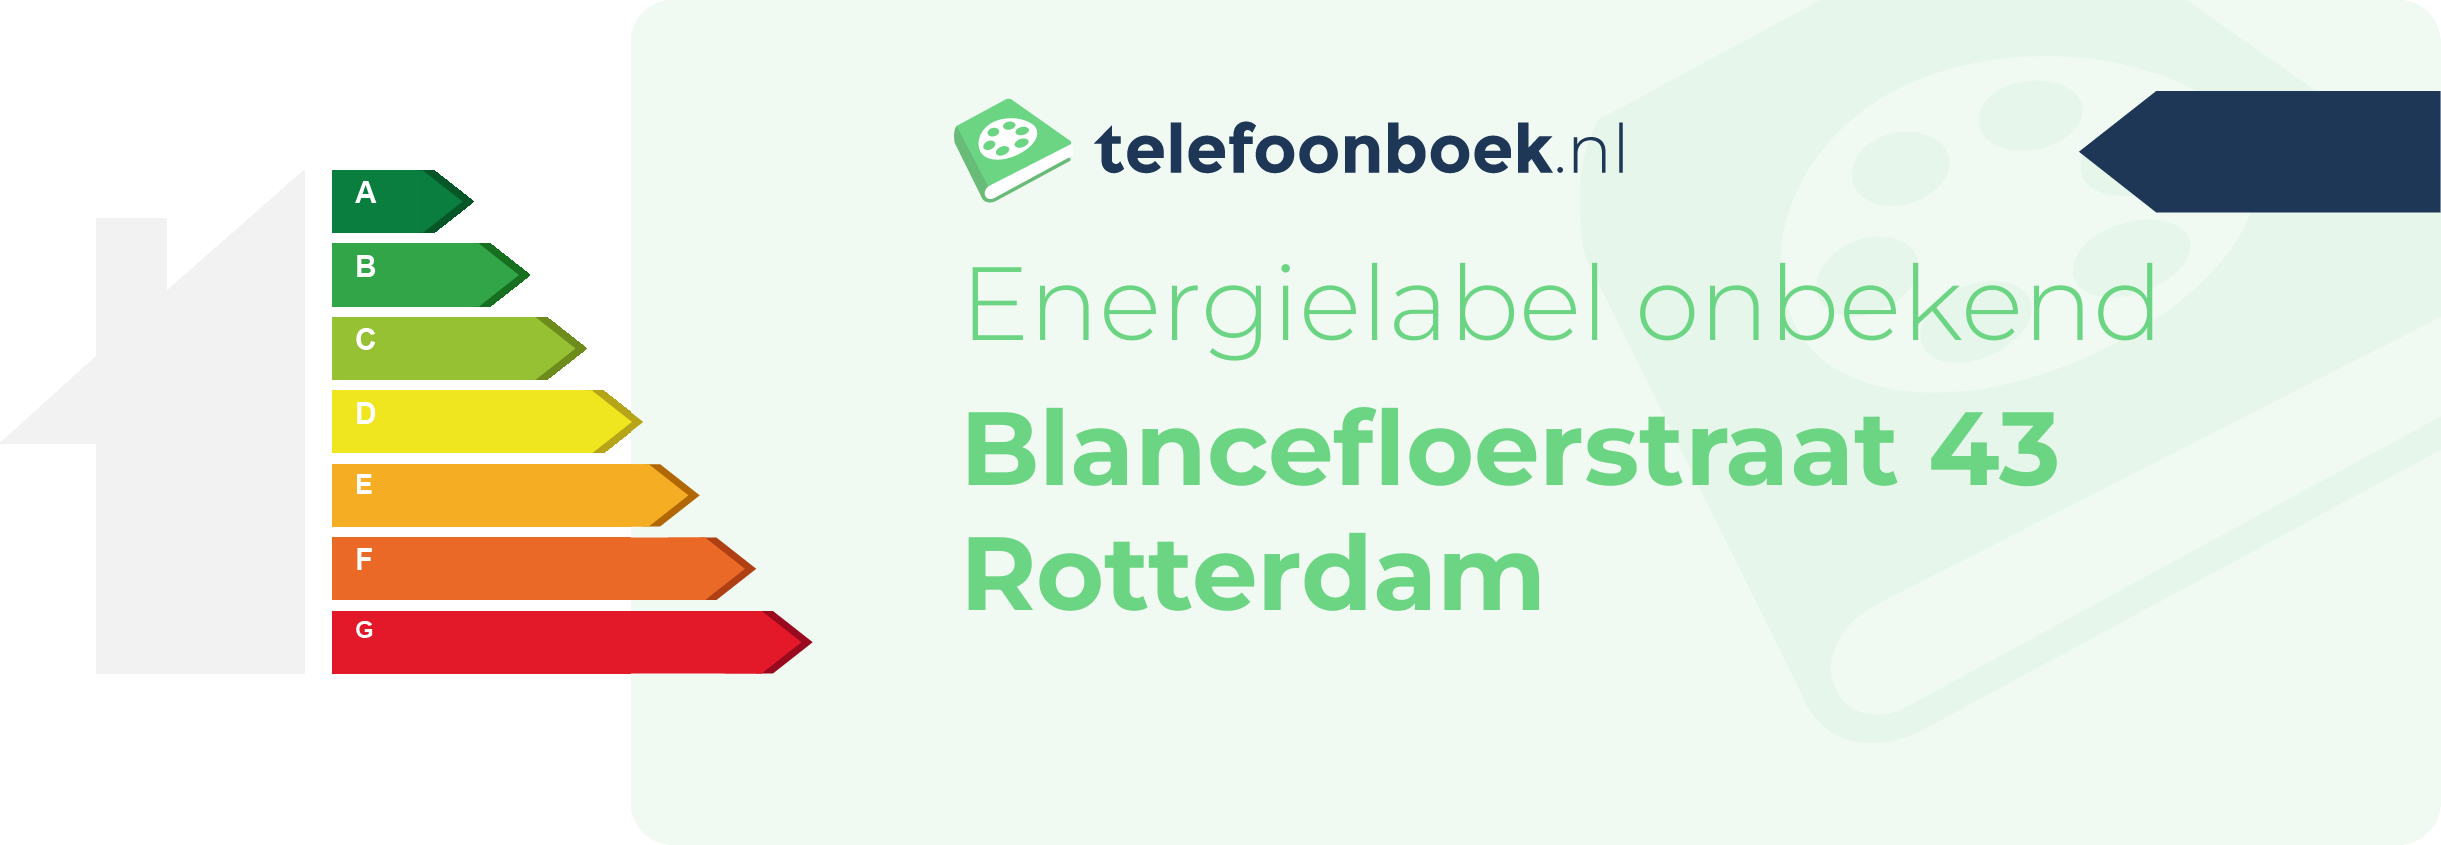 Energielabel Blancefloerstraat 43 Rotterdam